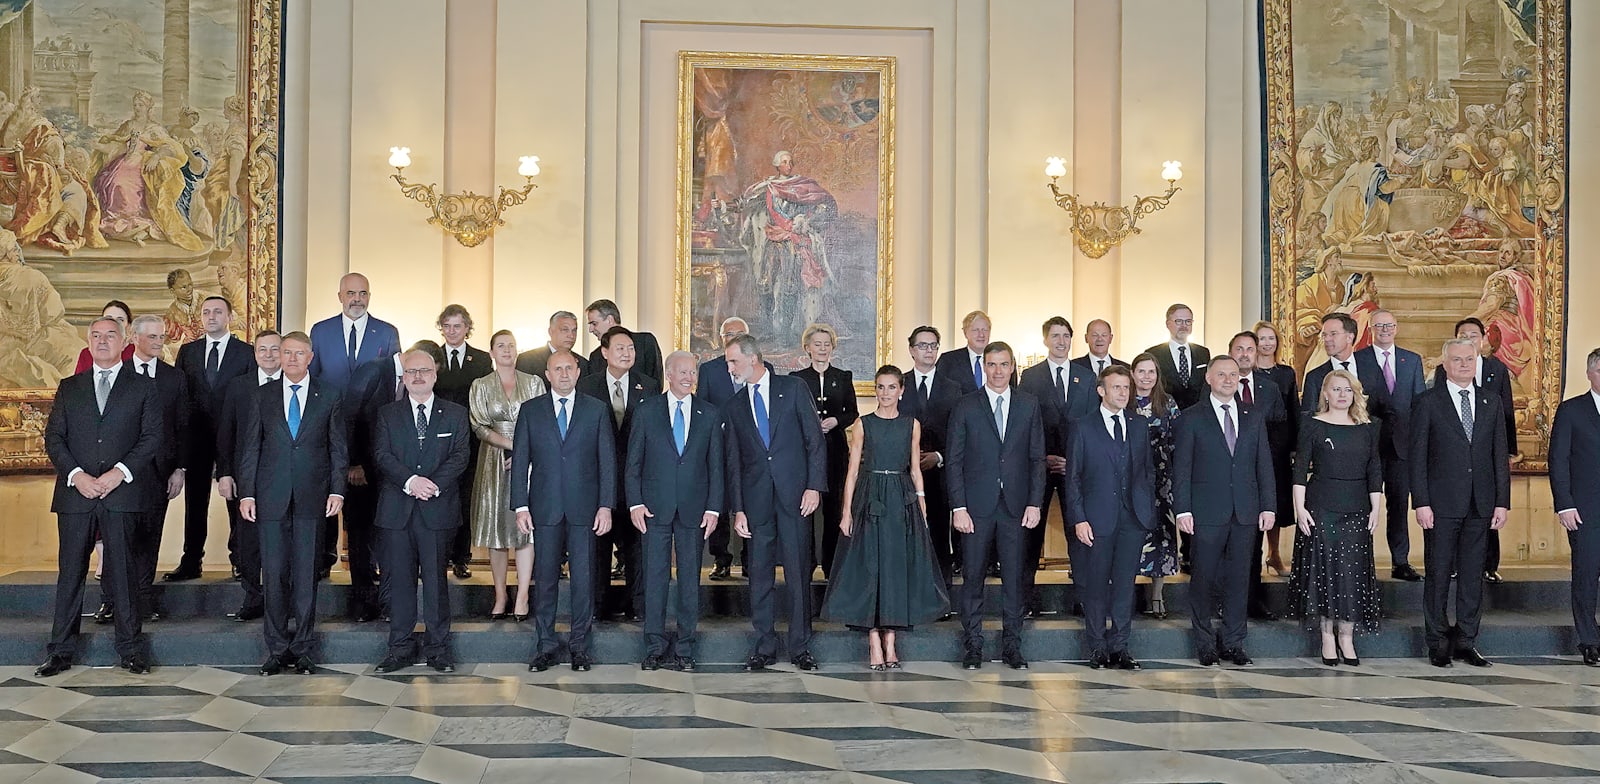 מלך ומלכת ספרד, פליפה ולטיסיה (במרכז) עם מנהיגי נאט''ו בארמון המלוכה במדריד, שלישי / צילום: Associated Press, Andrea Comas